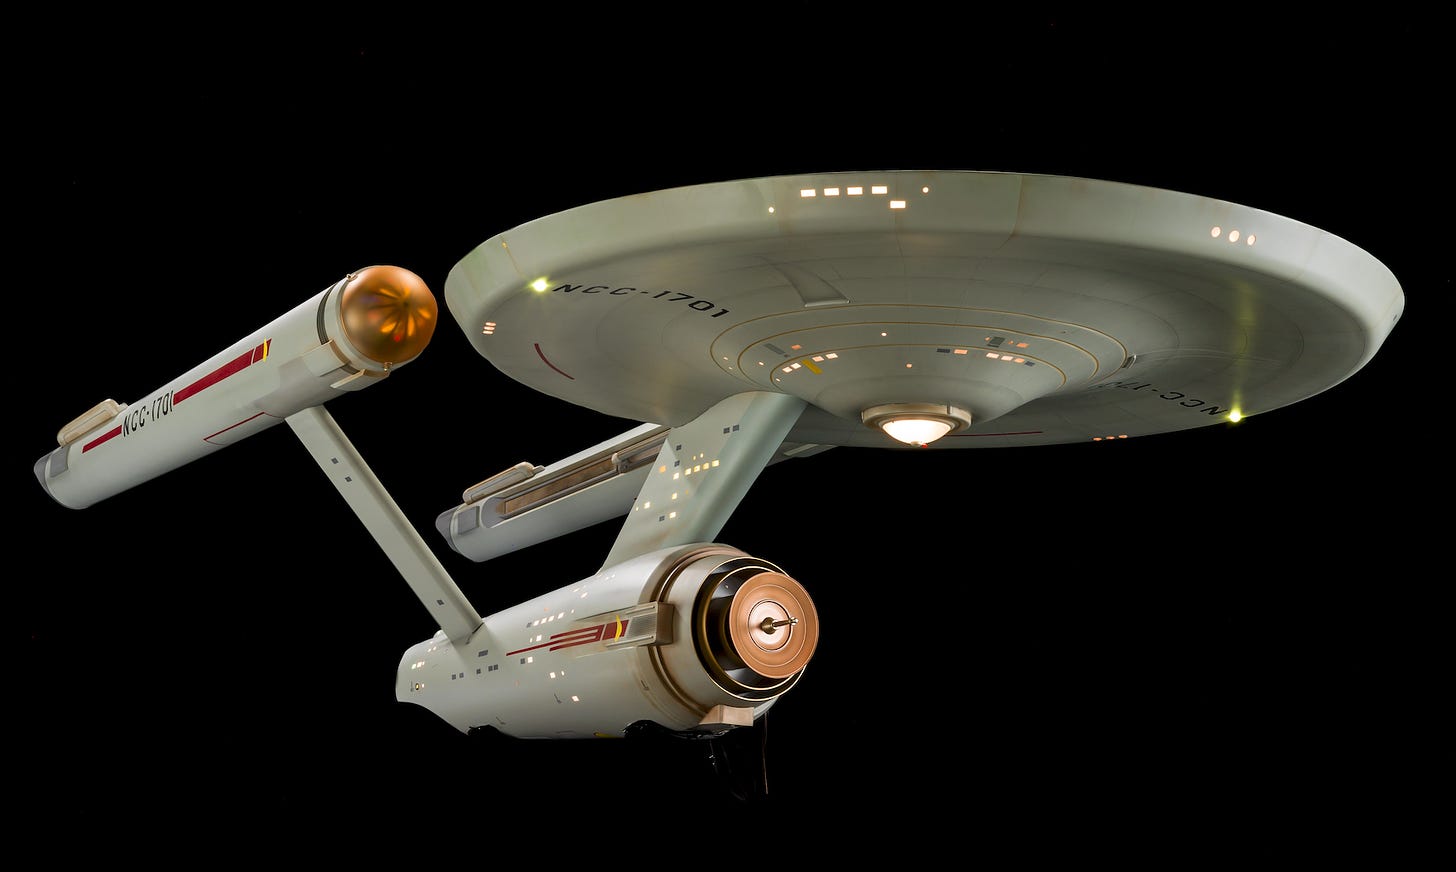 The starship USS Enterprise from Star Trek